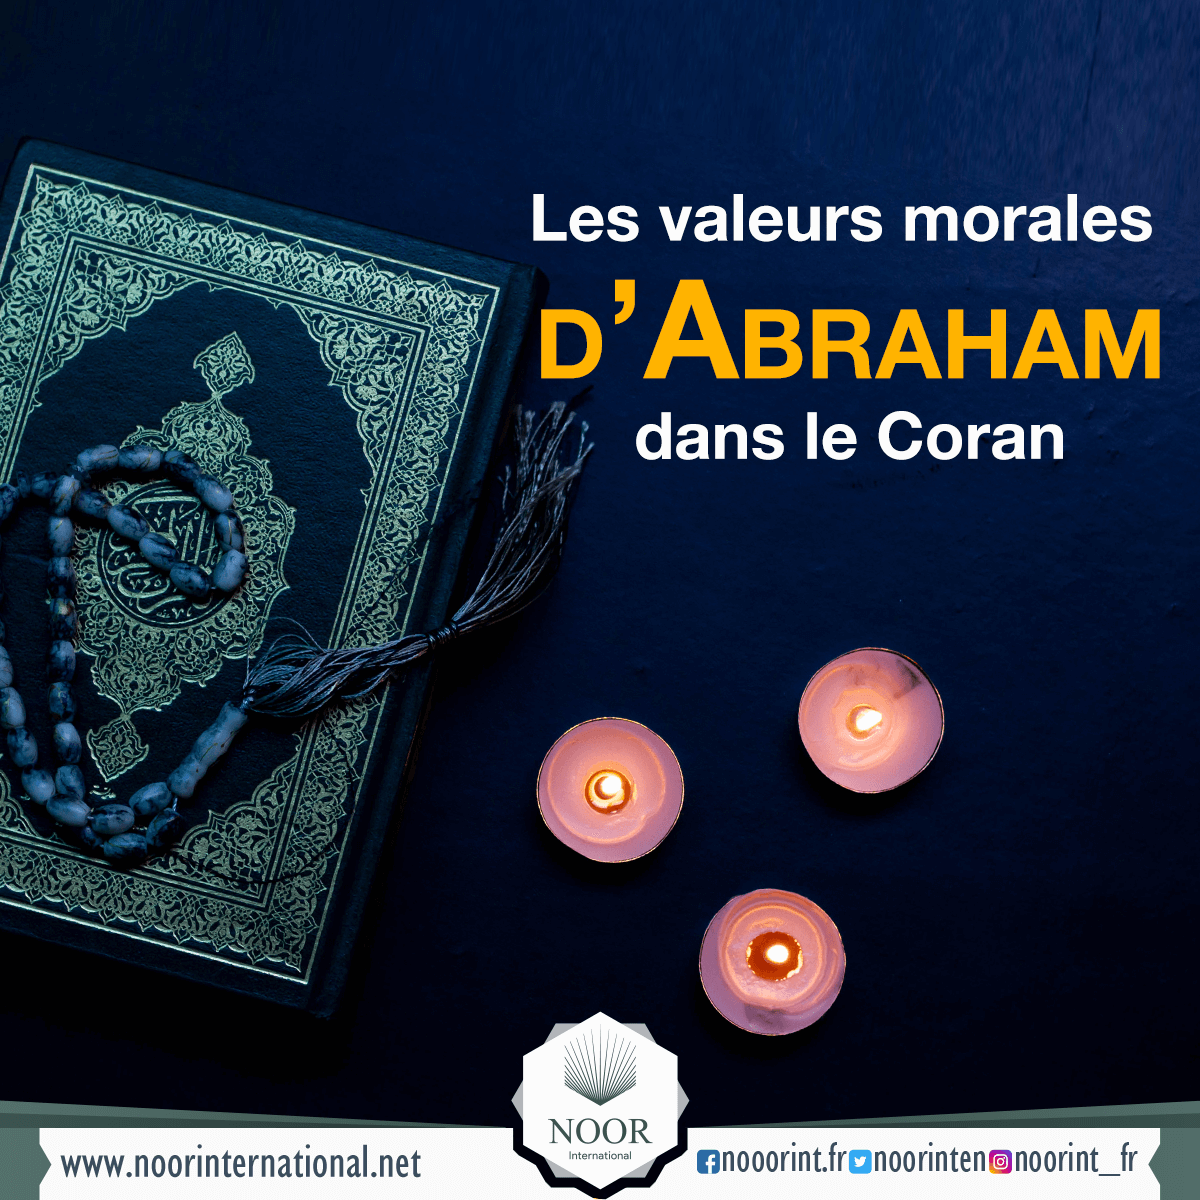 Les valeurs morales d’Abraham dans le Coran